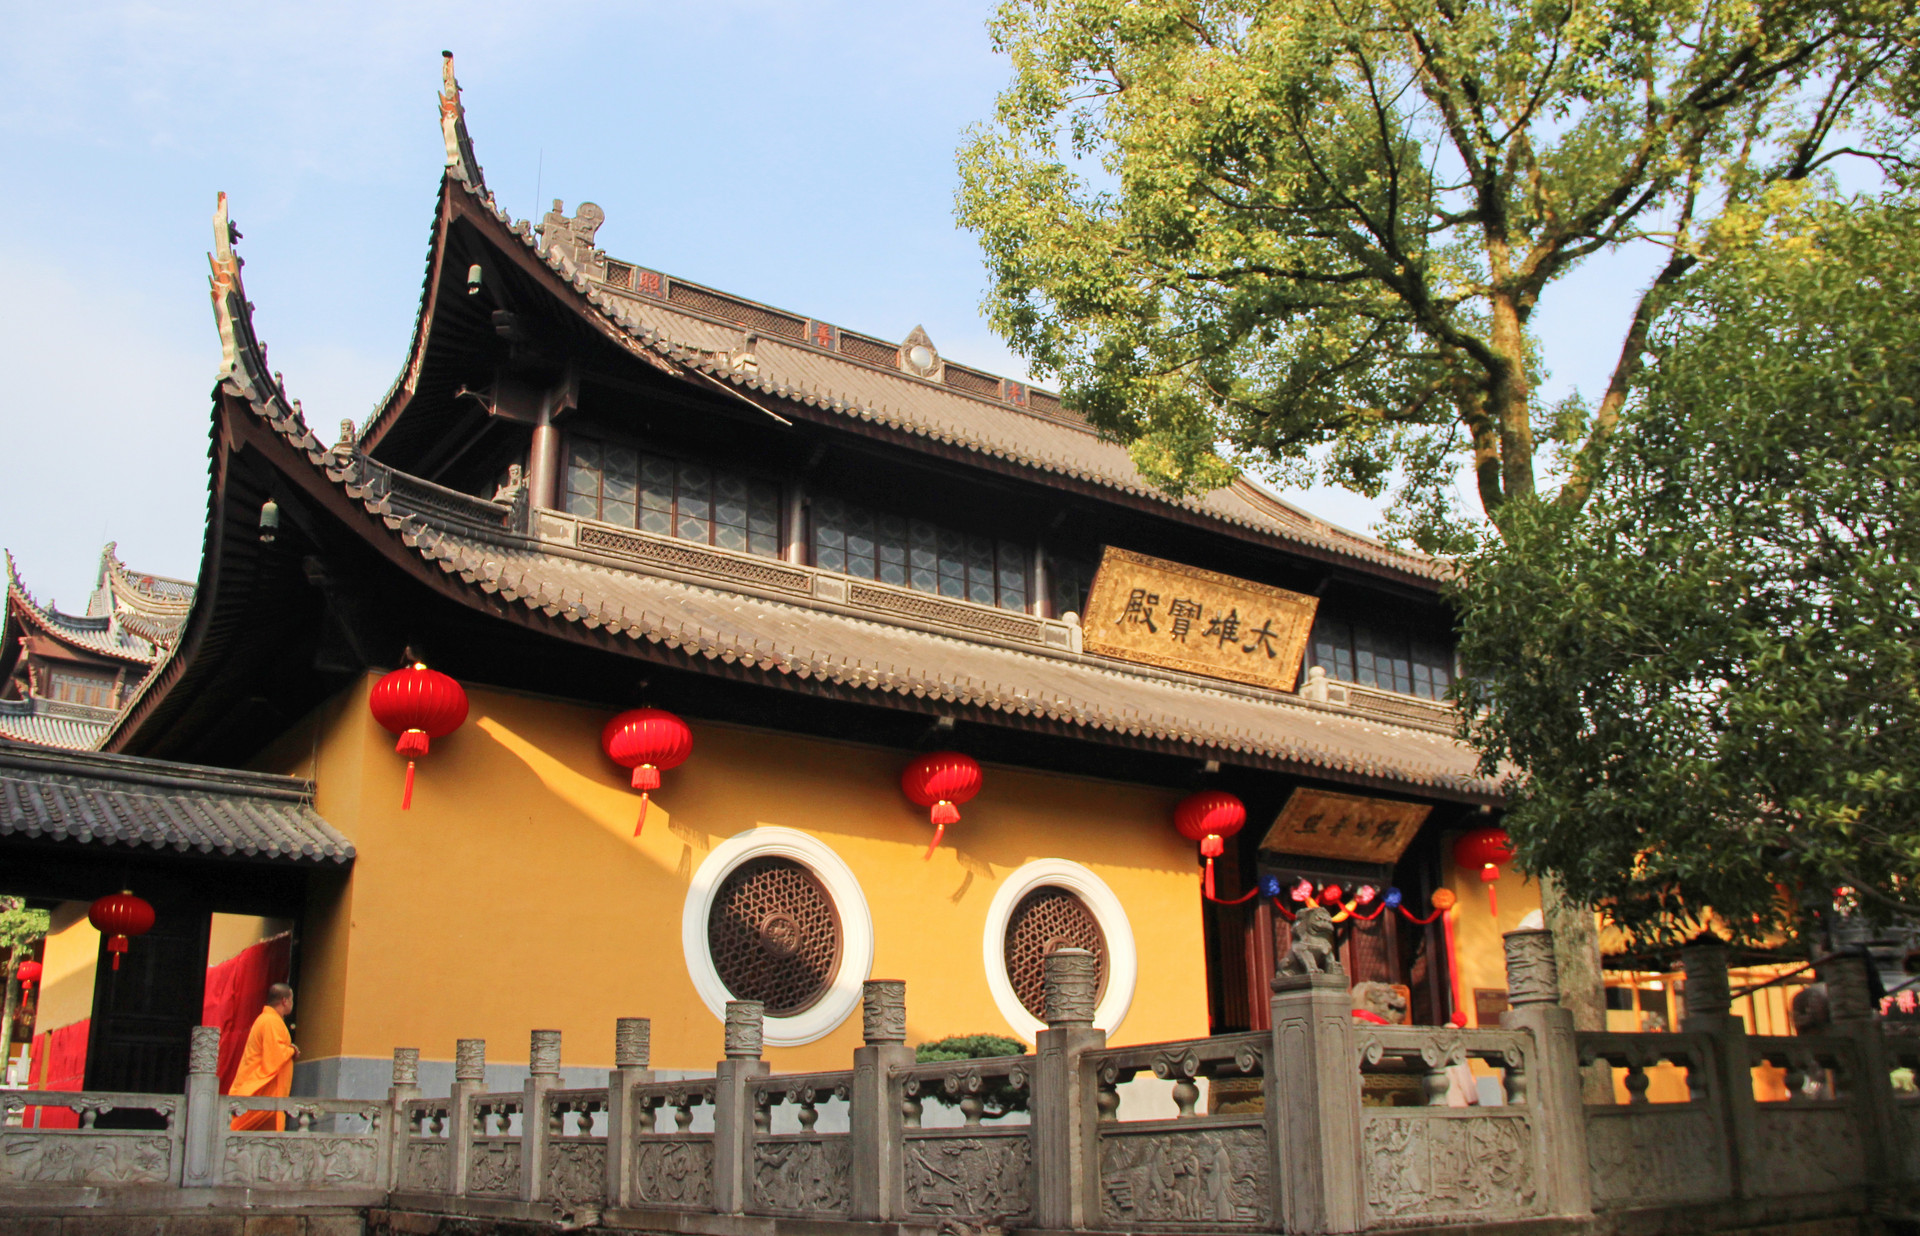 原创弥勒佛的道场在宁波这座寺庙已有1700多年成旅游胜地